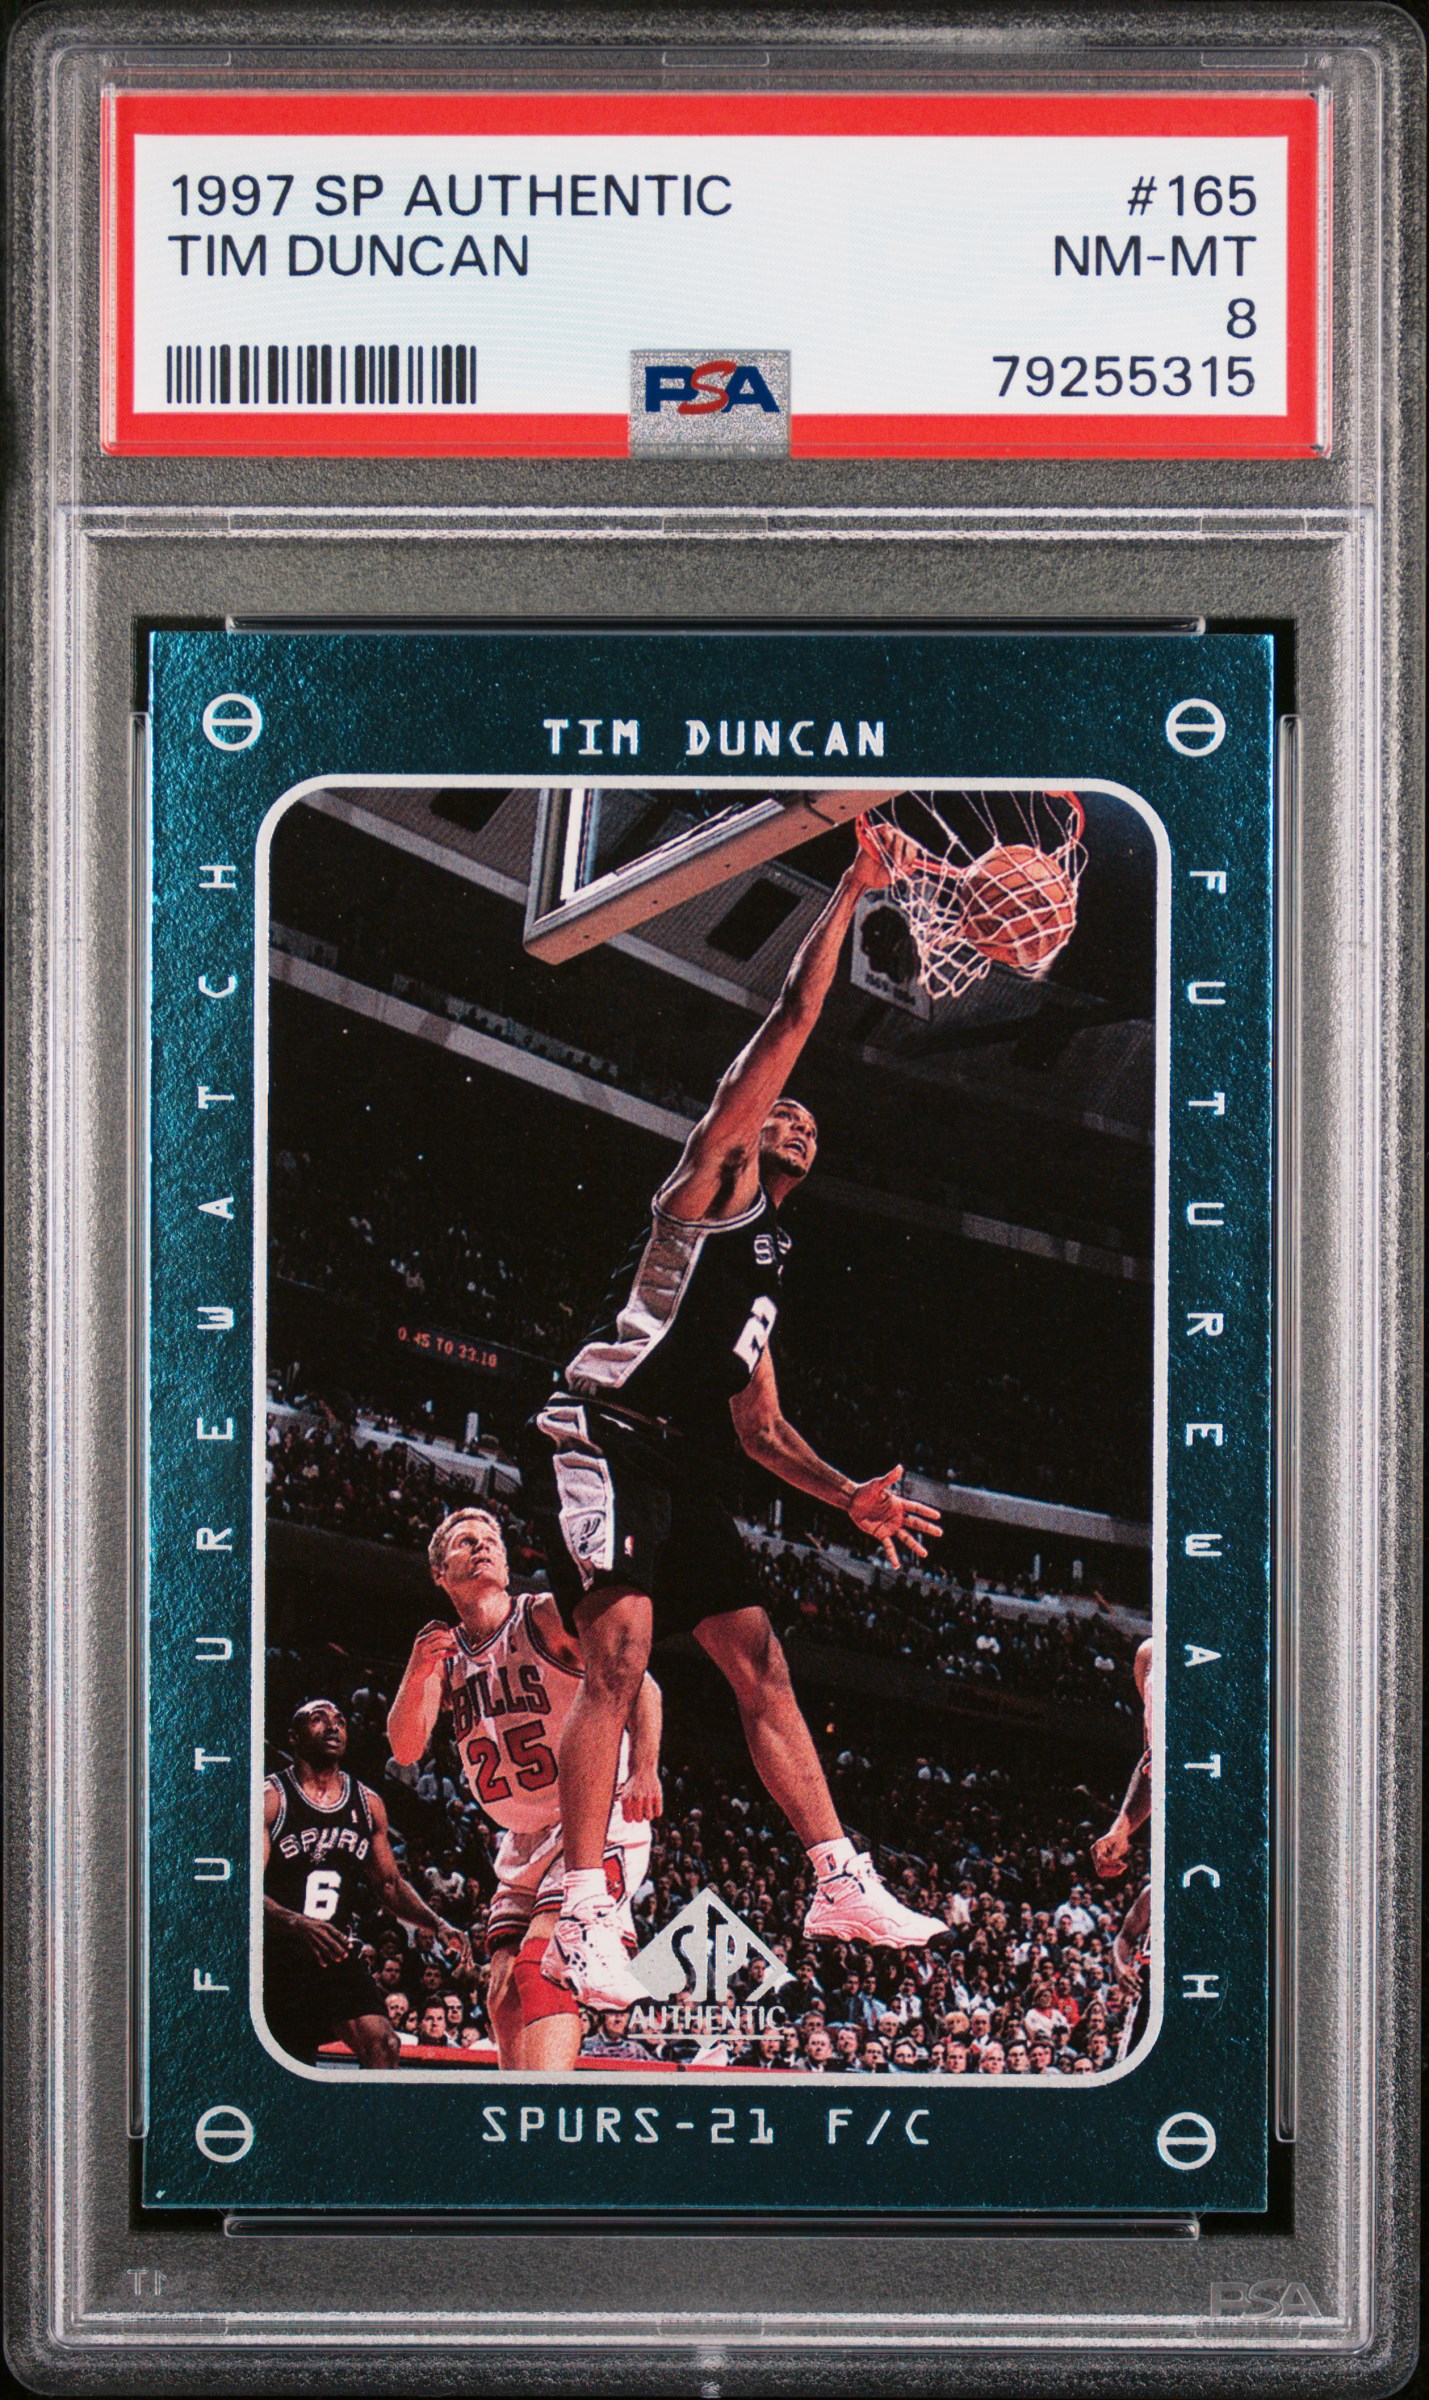 1997 SP Authentic 165 Tim Duncan Rookie Card – PSA NM-MT 8